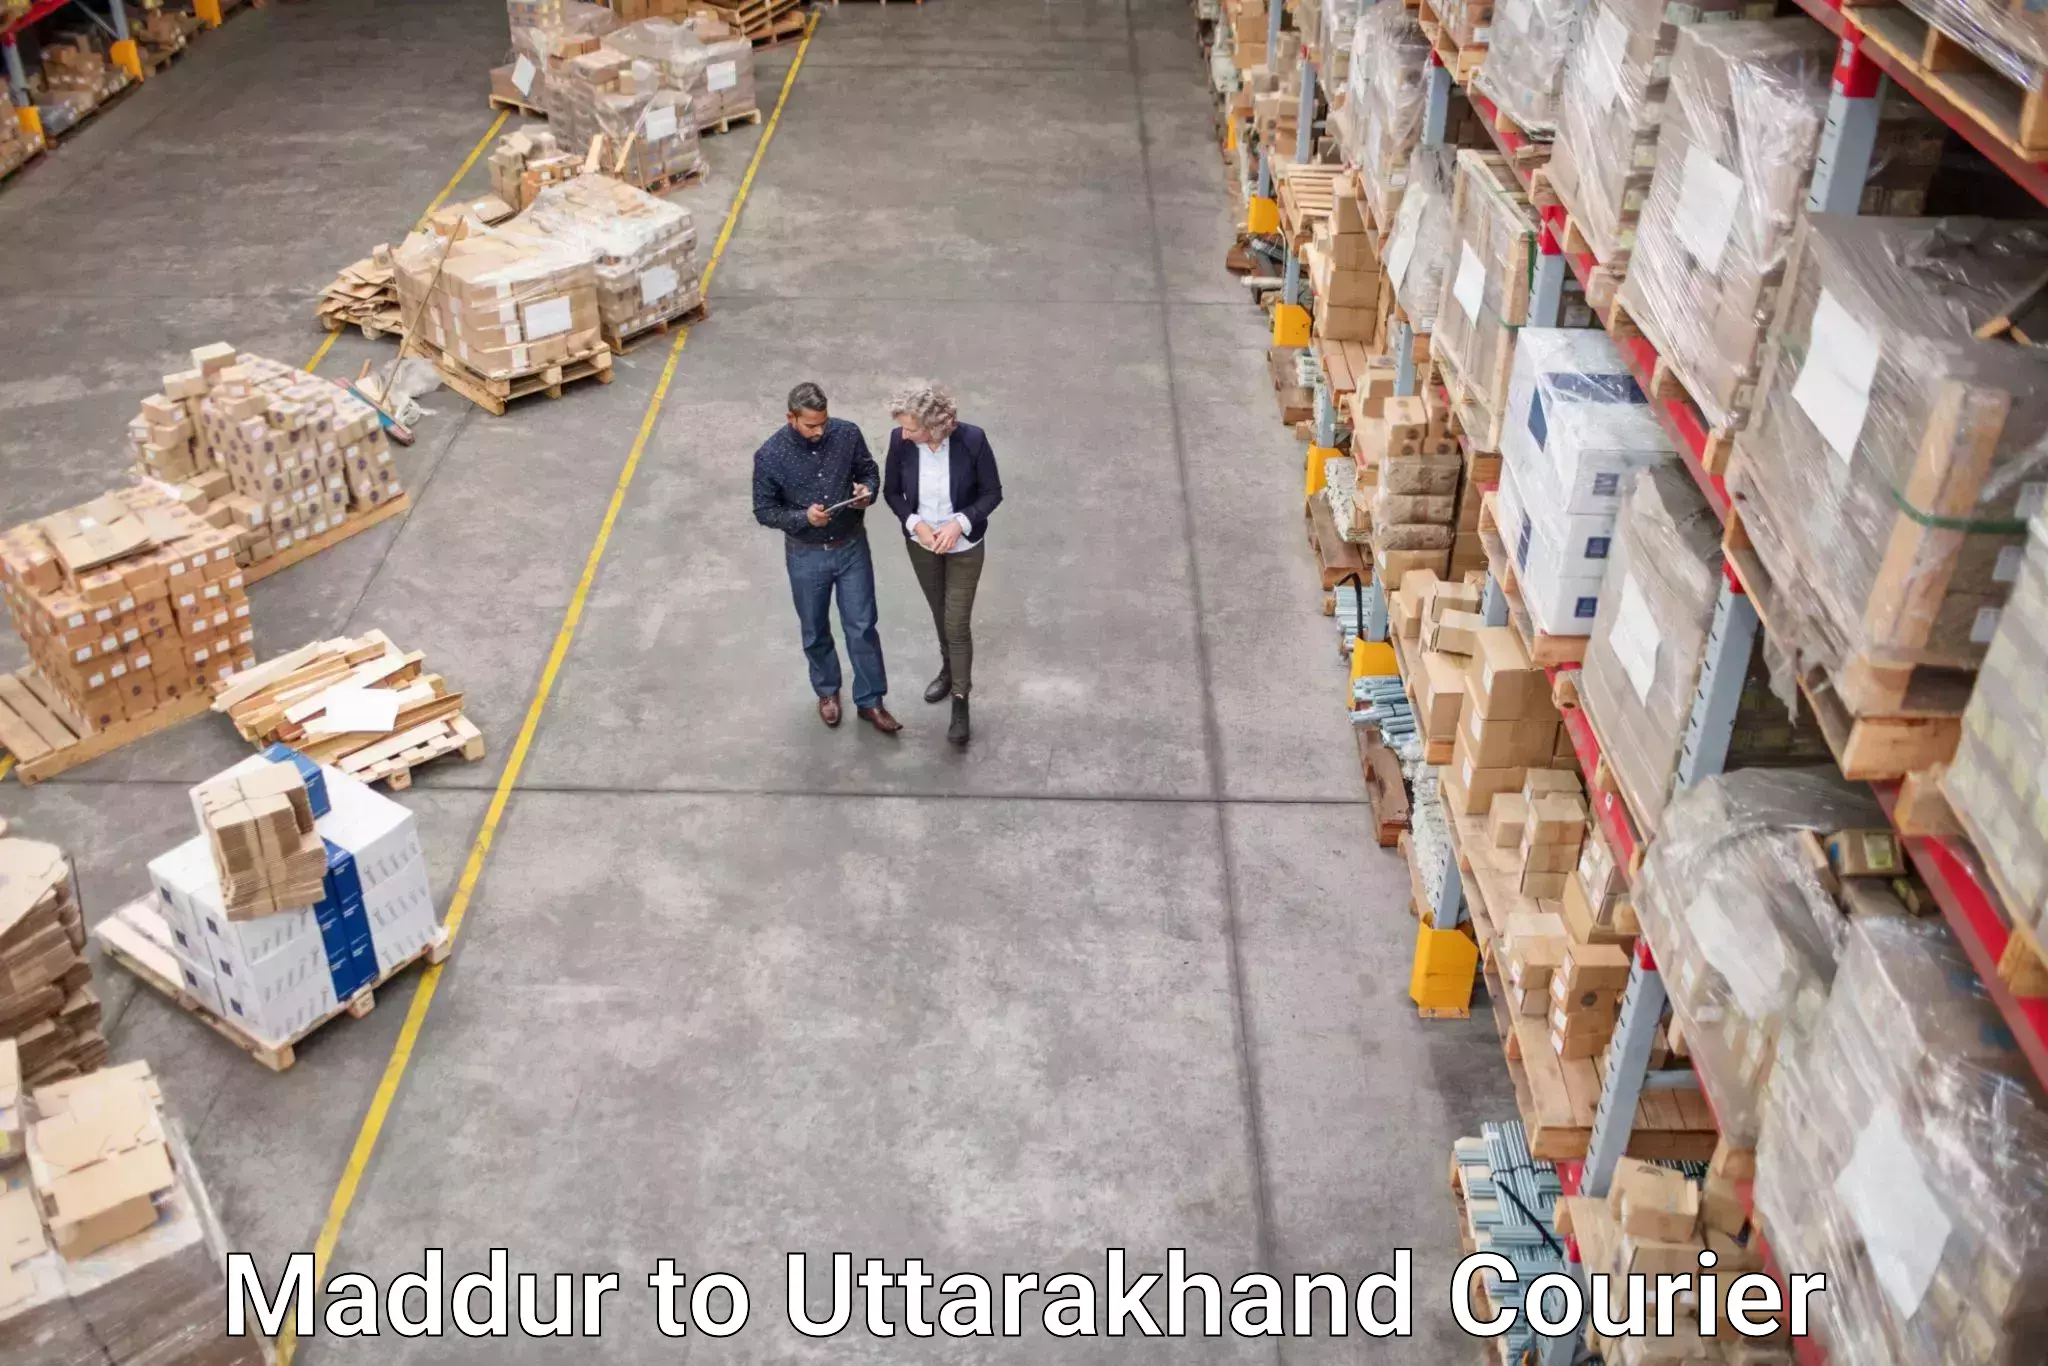 Speedy delivery service Maddur to Uttarkashi